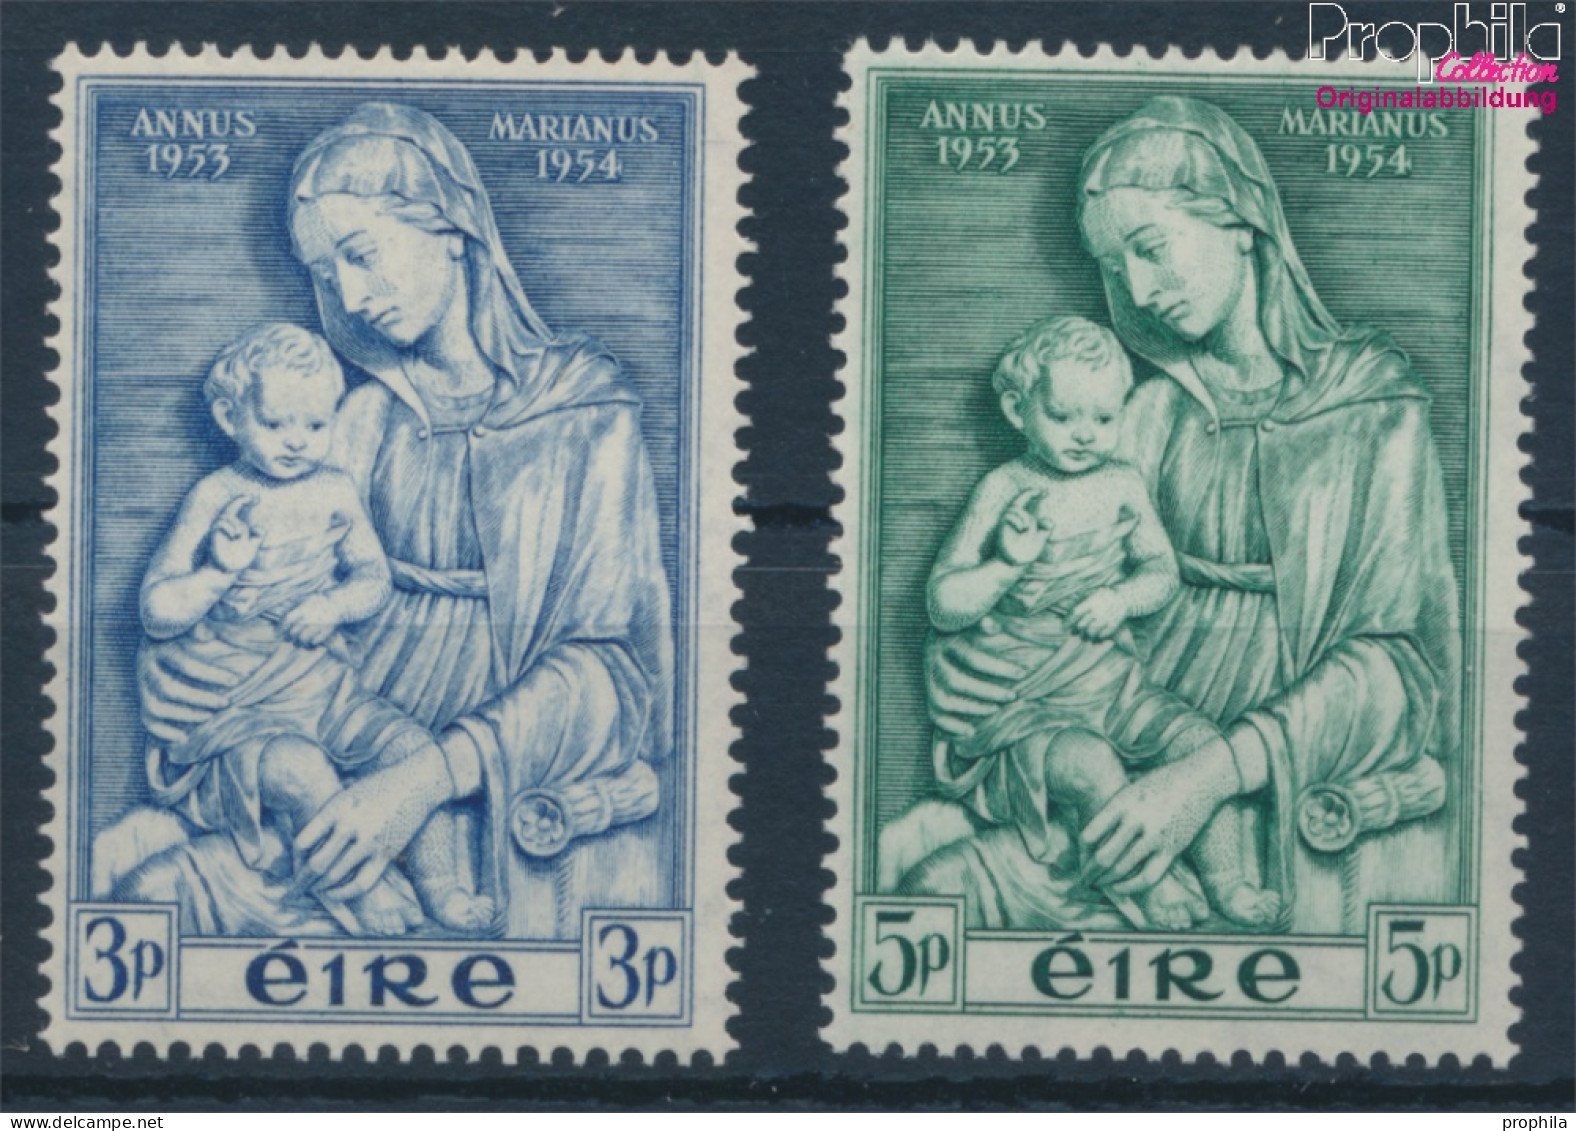 Irland 120-121 (kompl.Ausg.) Postfrisch 1954 Marianisches Jahr (10398343 - Ongebruikt